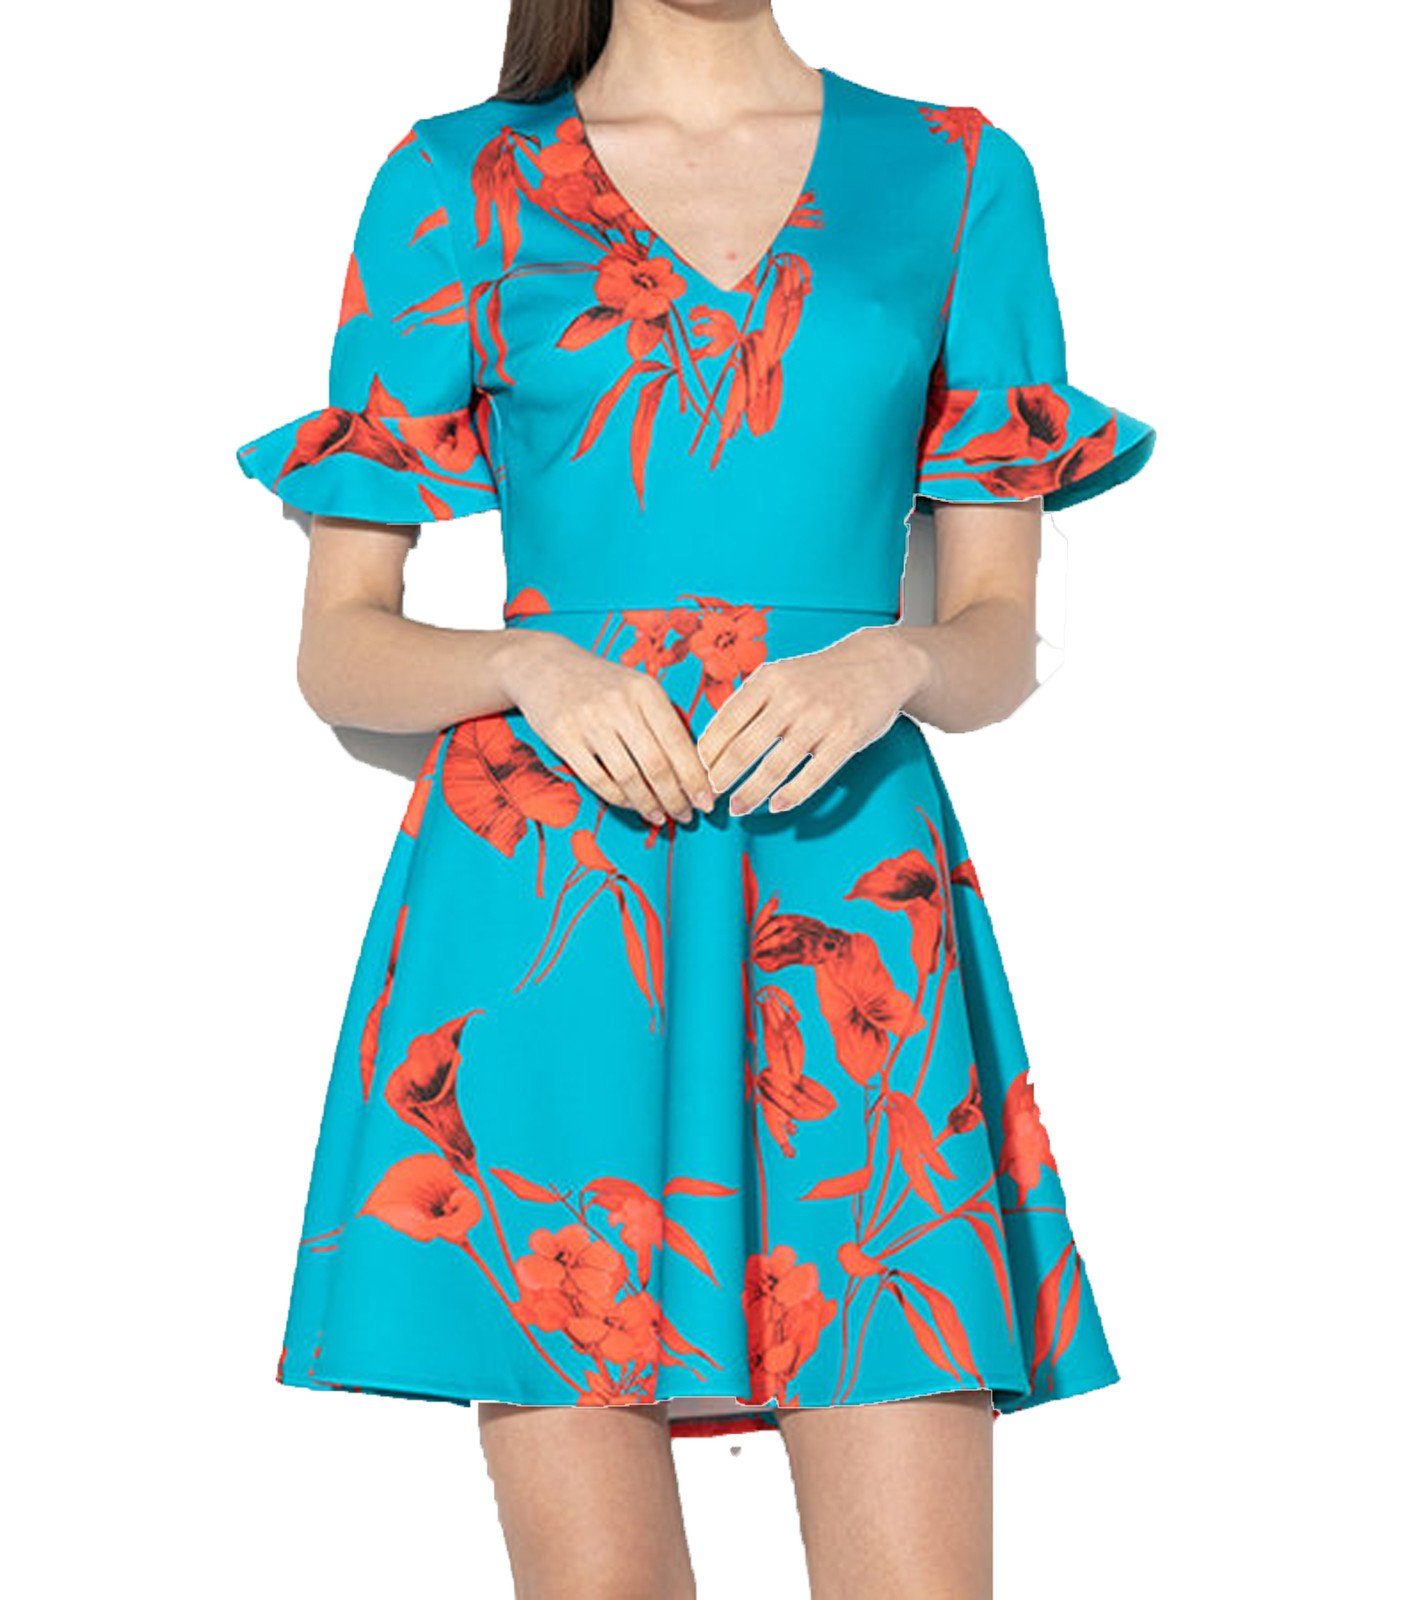 Ted Baker Sommerkleid »TED BAKER LONDON Sommer-Kleid feminines Damen  Ausgeh-Kleid mit Blütendruck Party-Kleid Türkis-Blau« online kaufen | OTTO